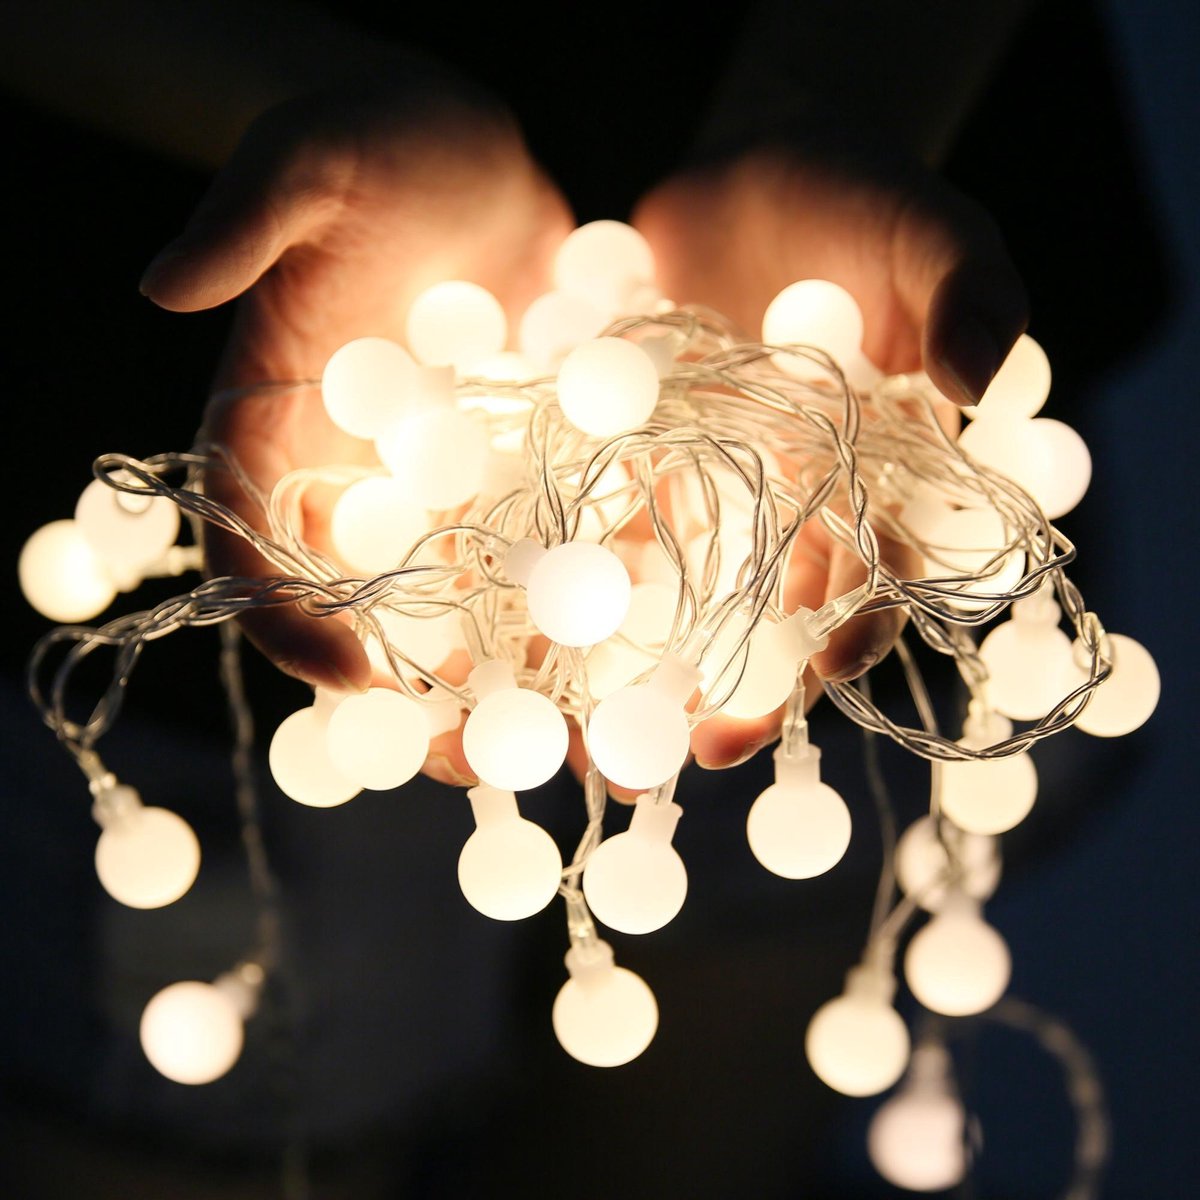 Fonctionne avec des piles idéale pour Noël ou un mariage blanc chaud Guirlande lumineuse de 3 m avec 30 boules à LED en coton coloré 